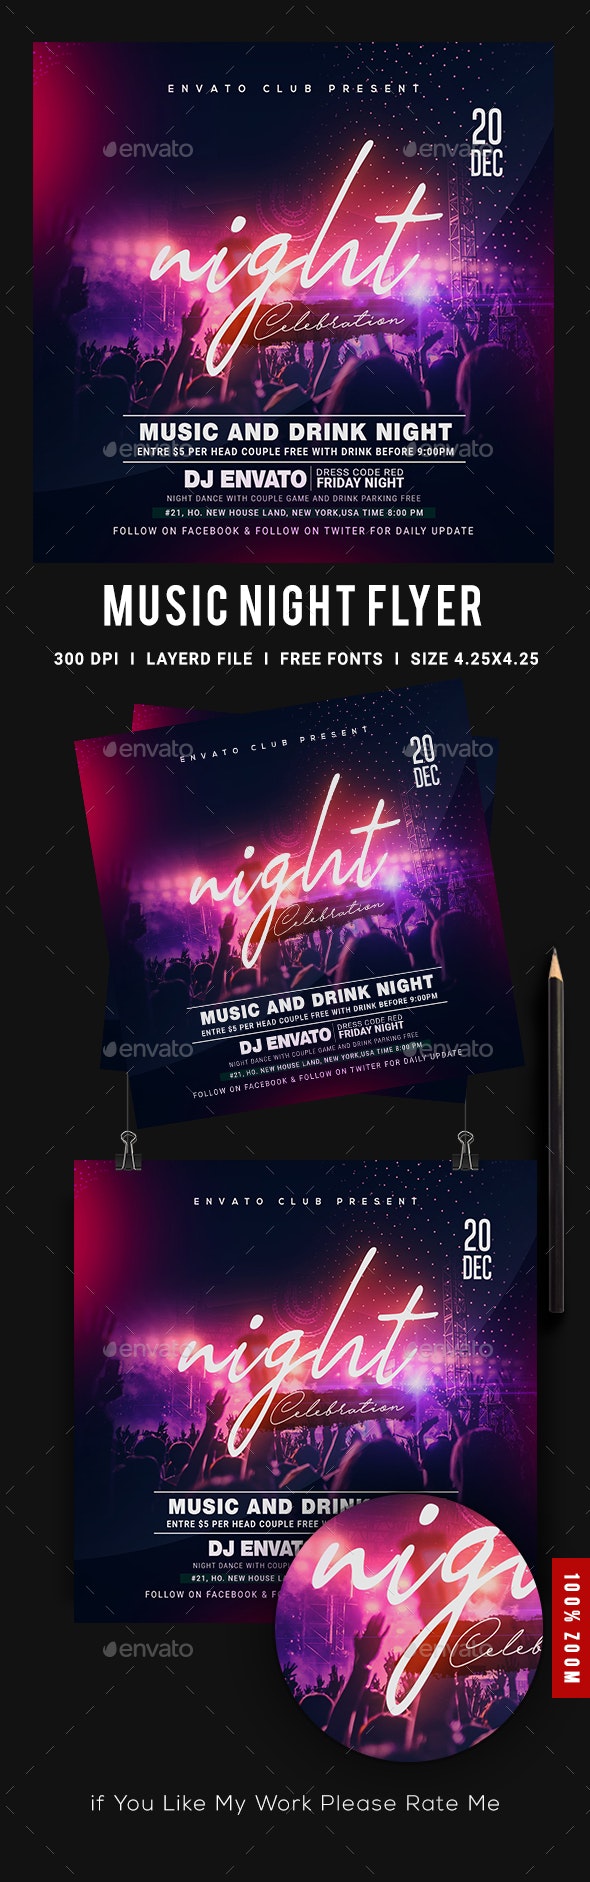 DJ音乐之夜派对传单海报设计 #363506